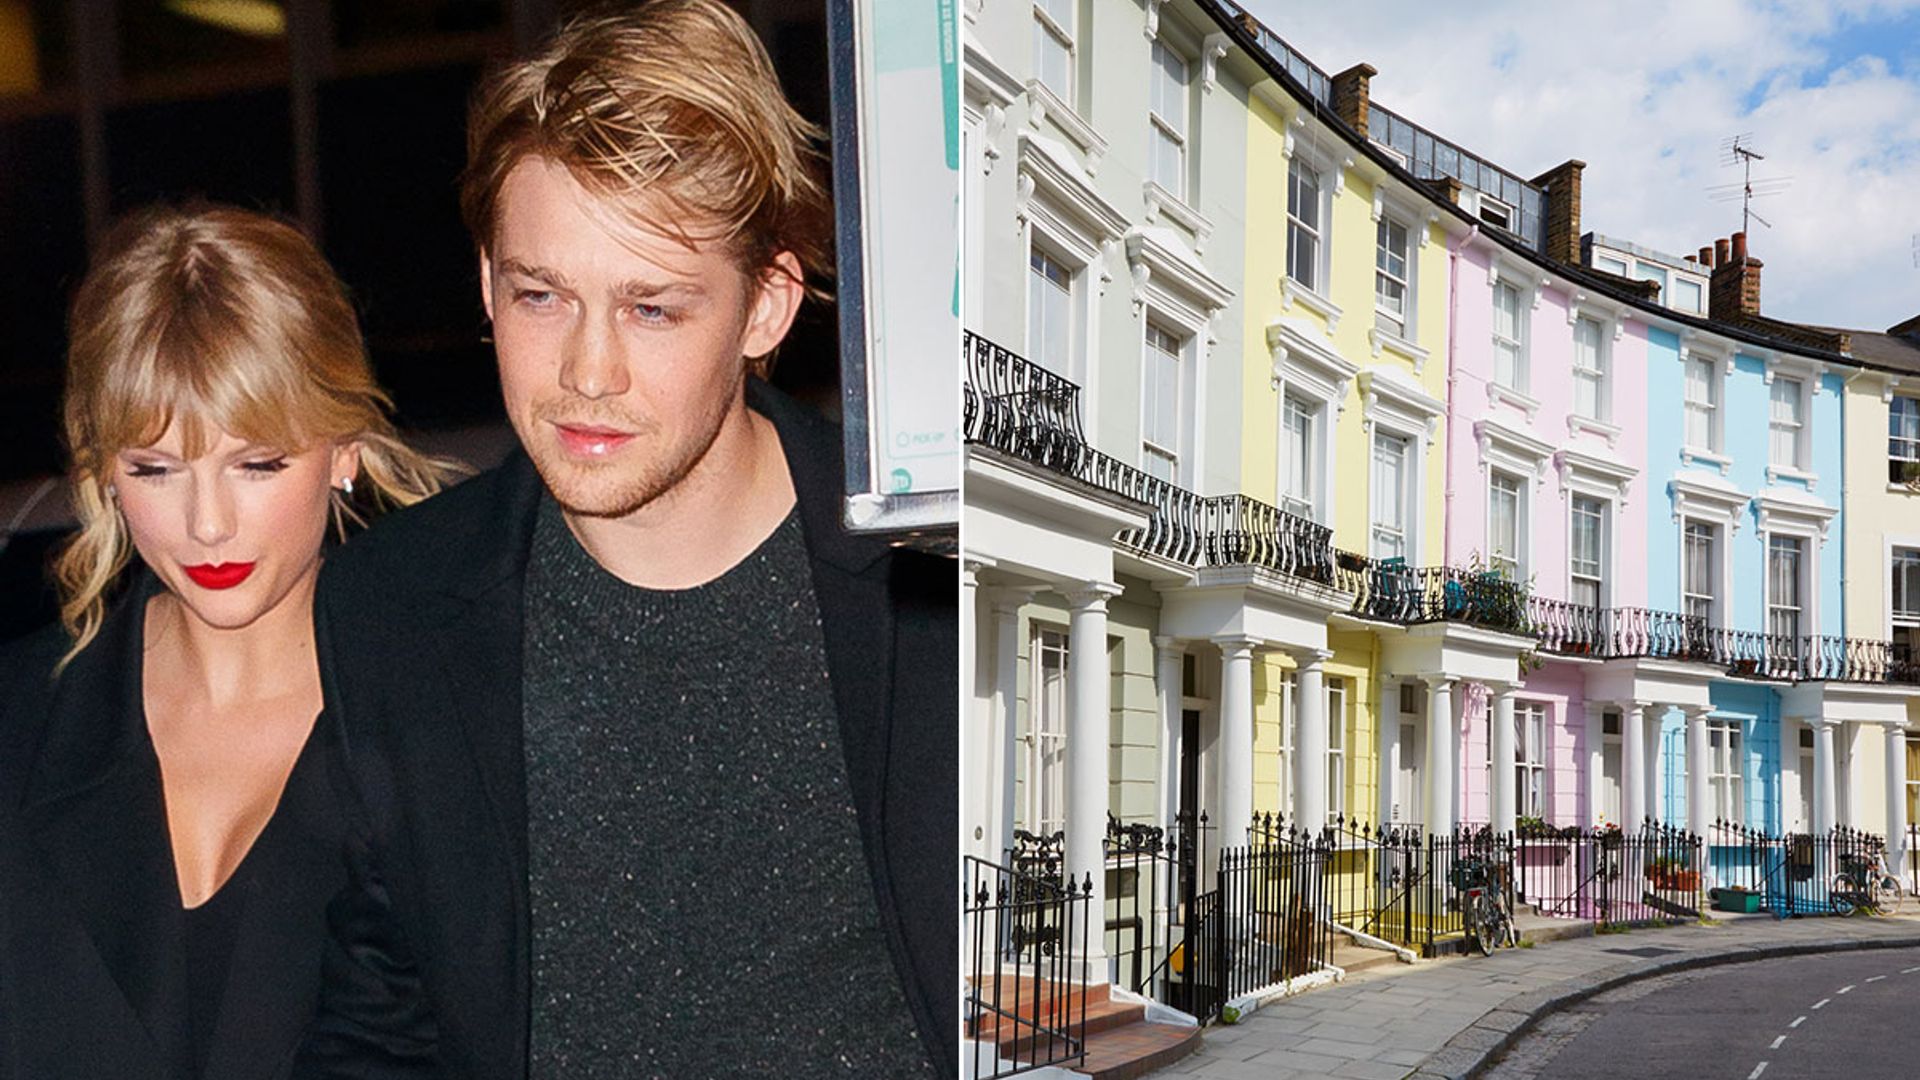 Joe Alwyn's £7 million London townhouse with girlfriend Taylor Swift revealed